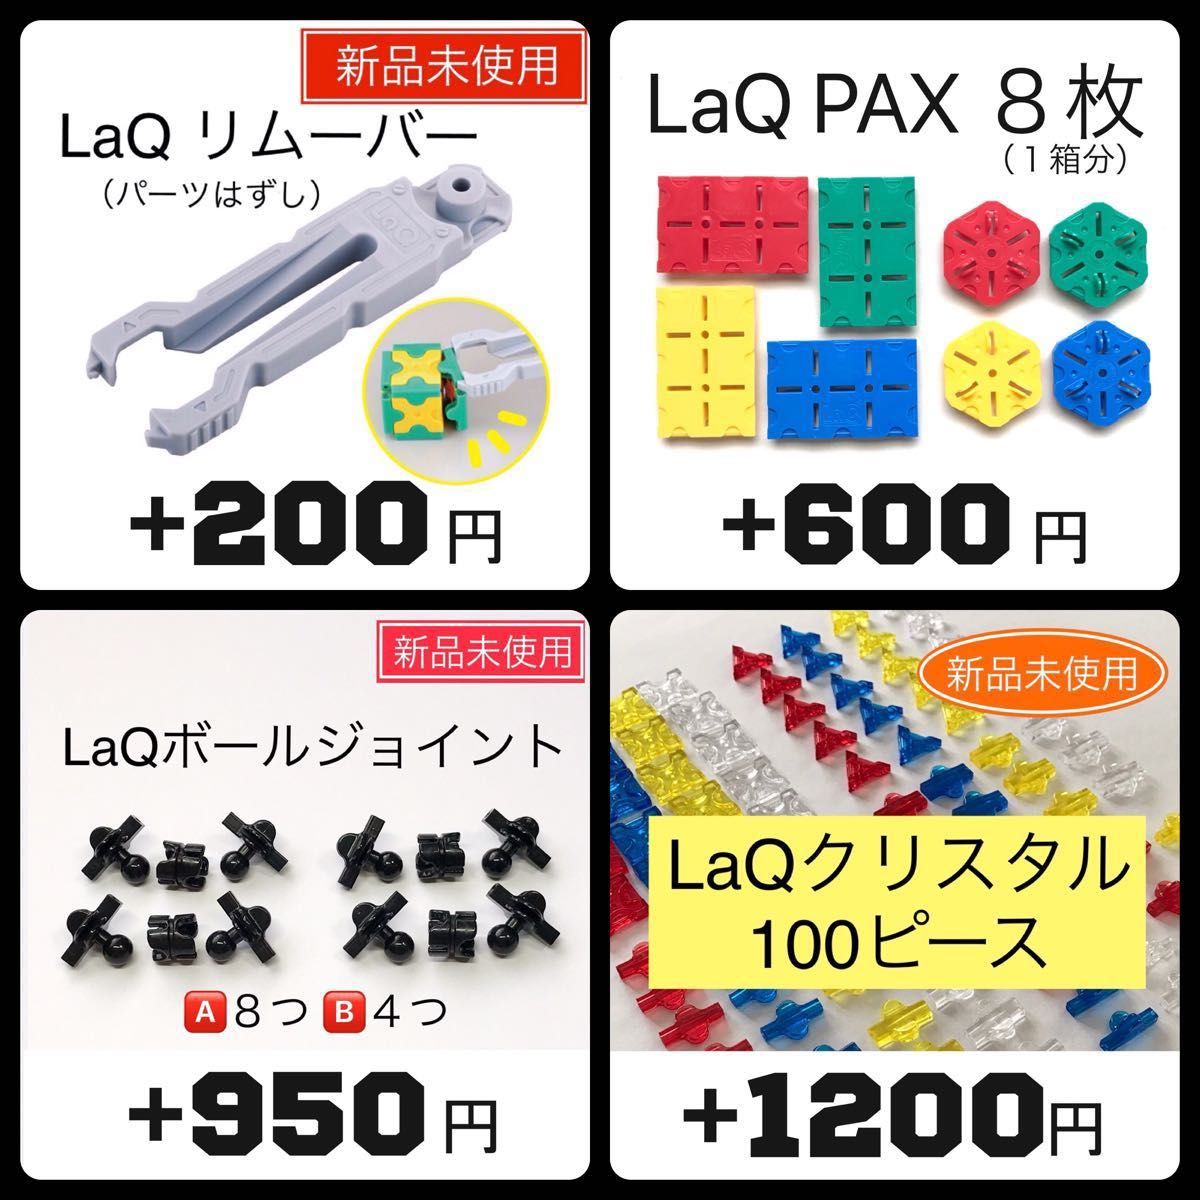 LaQ クリスタル100+ジュエル60+ハマクロンミニ4軸5+1000ピース以上 大量 正規品